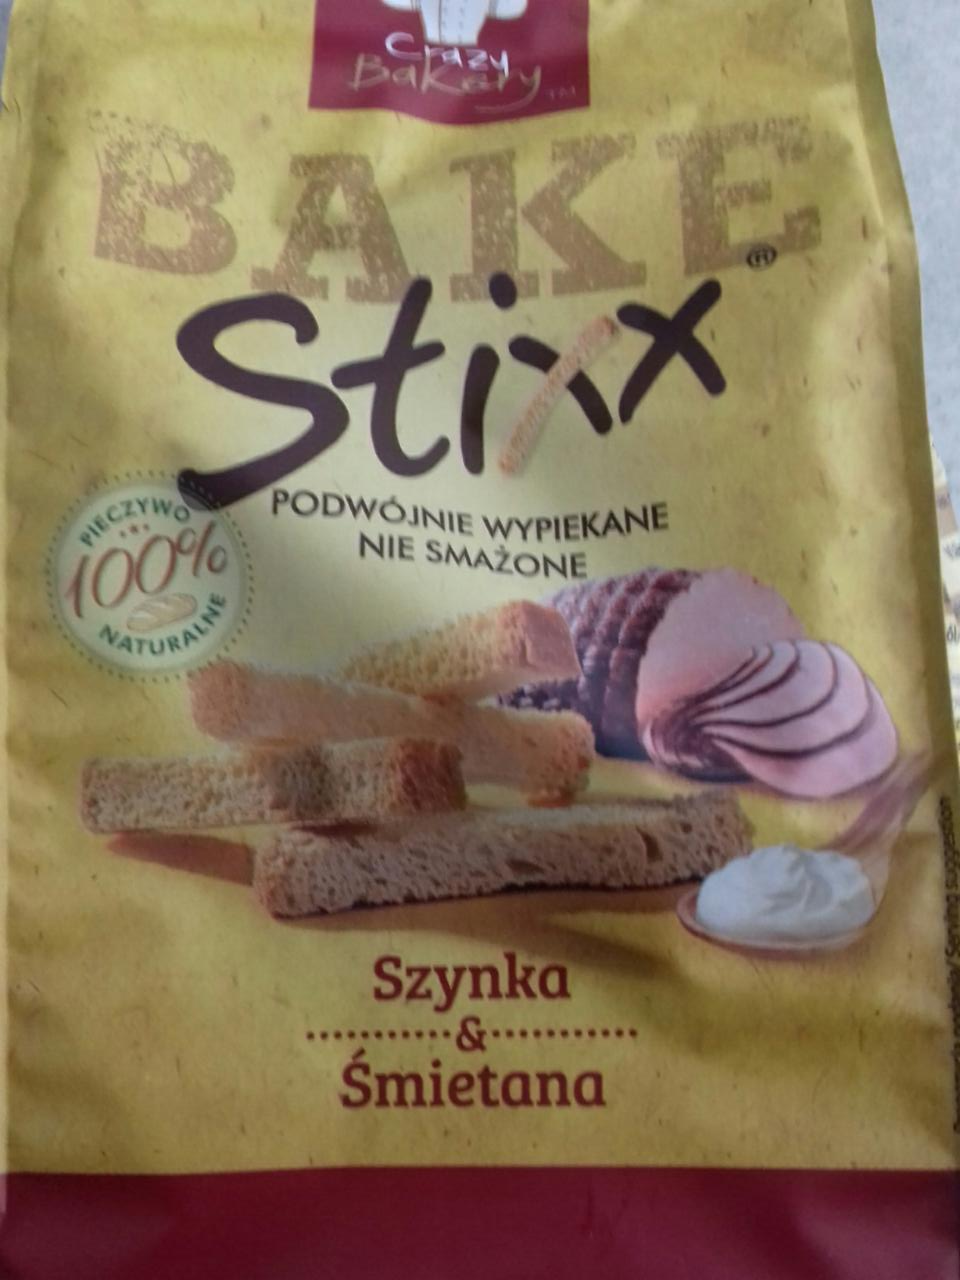 Zdjęcia - BAKE Stixx Szynka & Śmietana Crazy Bakery